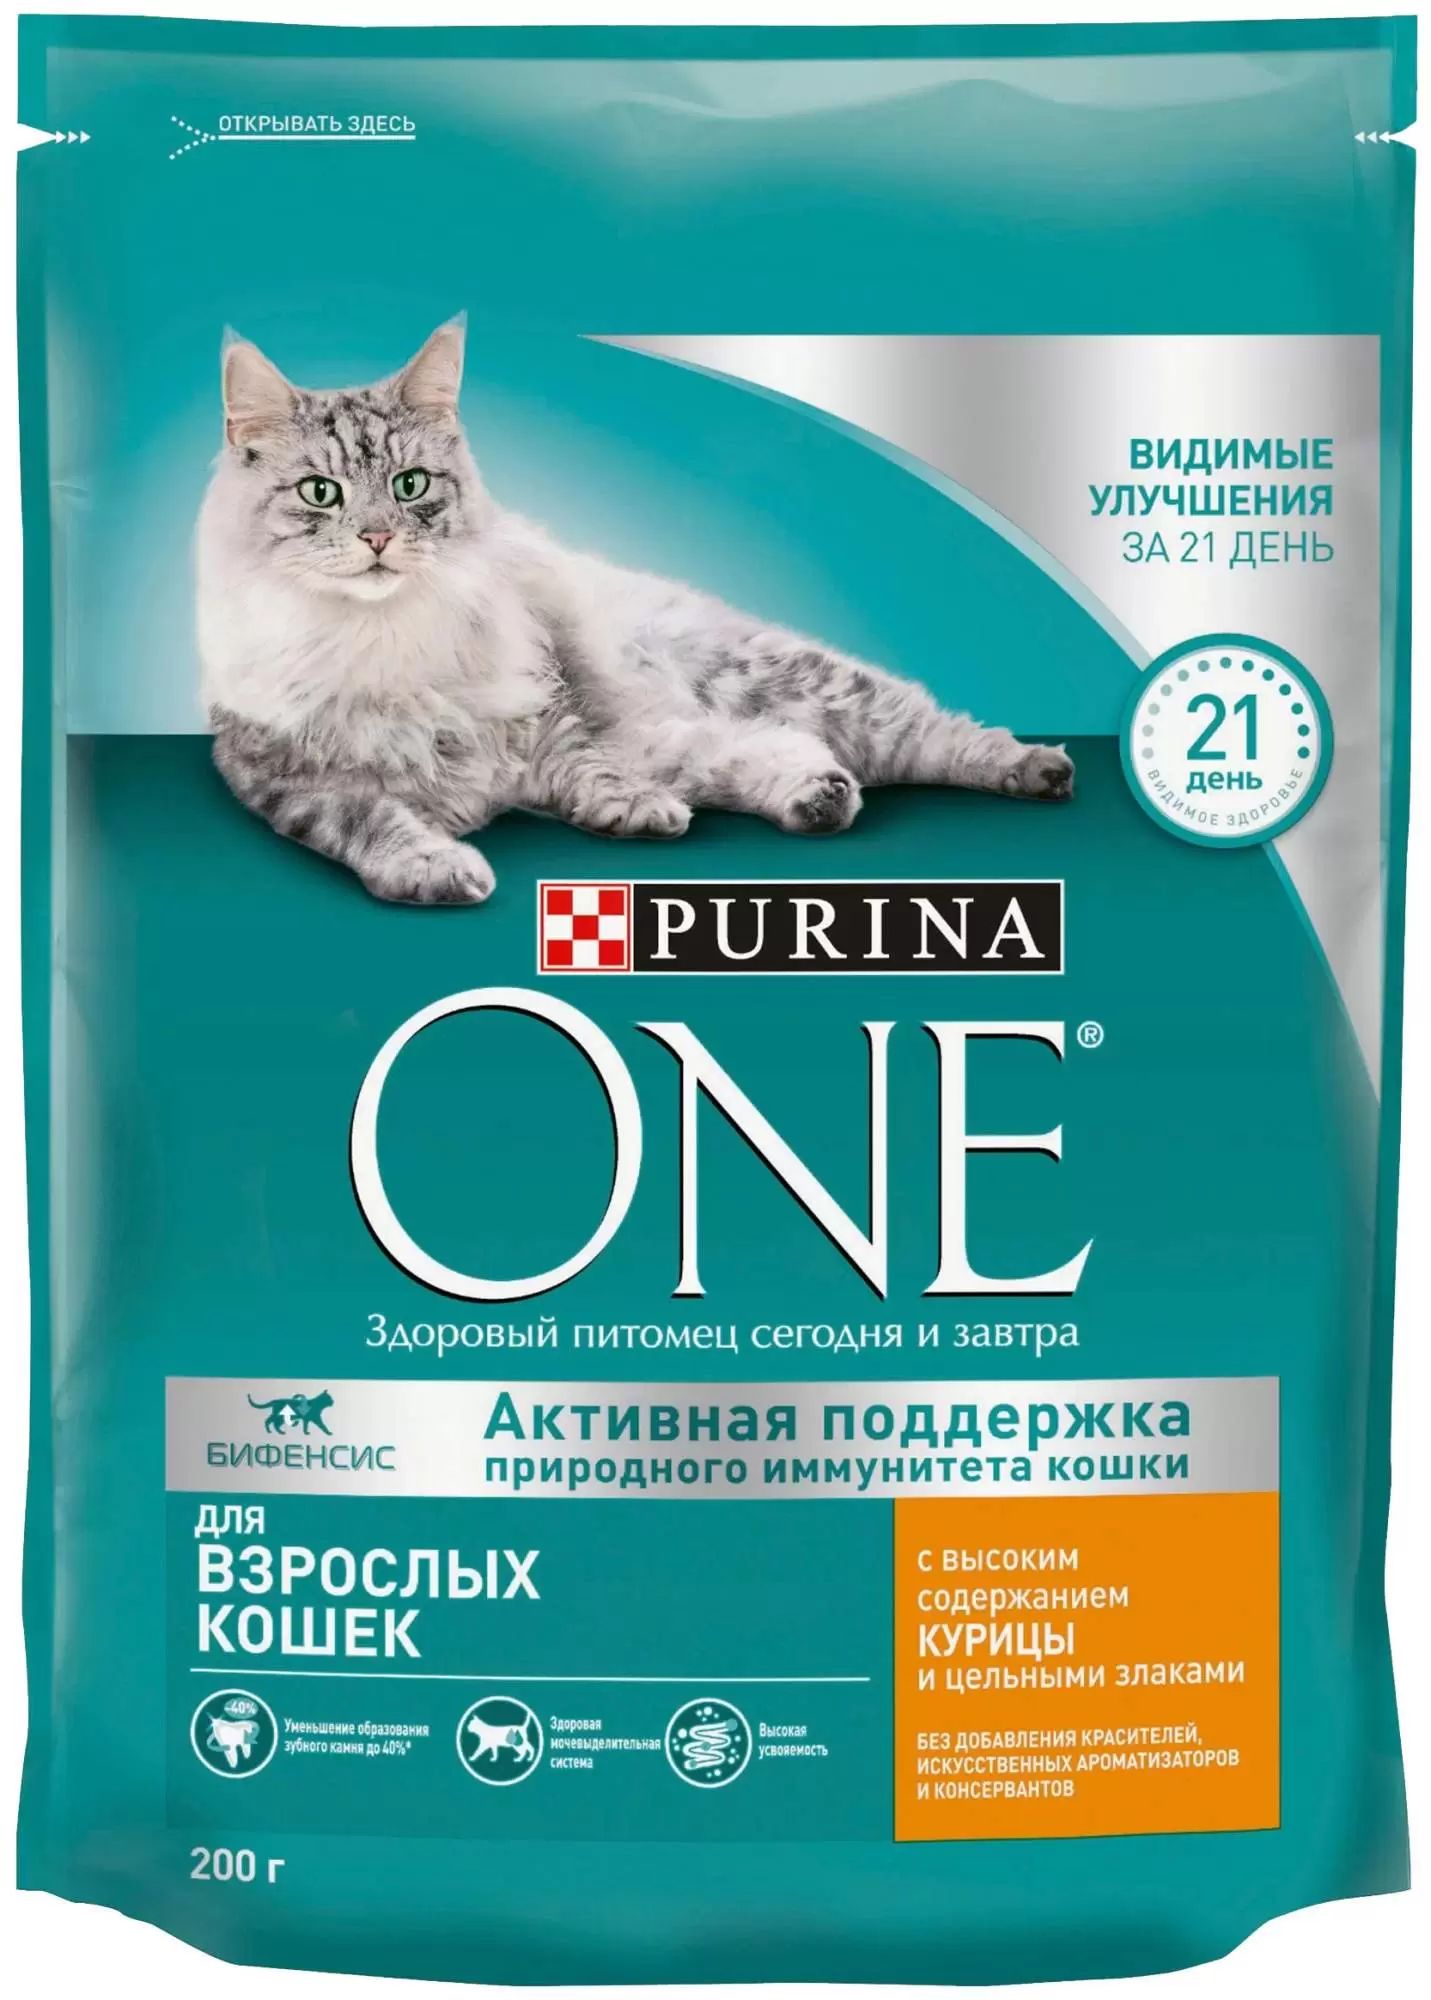 Сухой корм для кошек Purina One Активная поддержка с курицей и цельными злаками 200 г